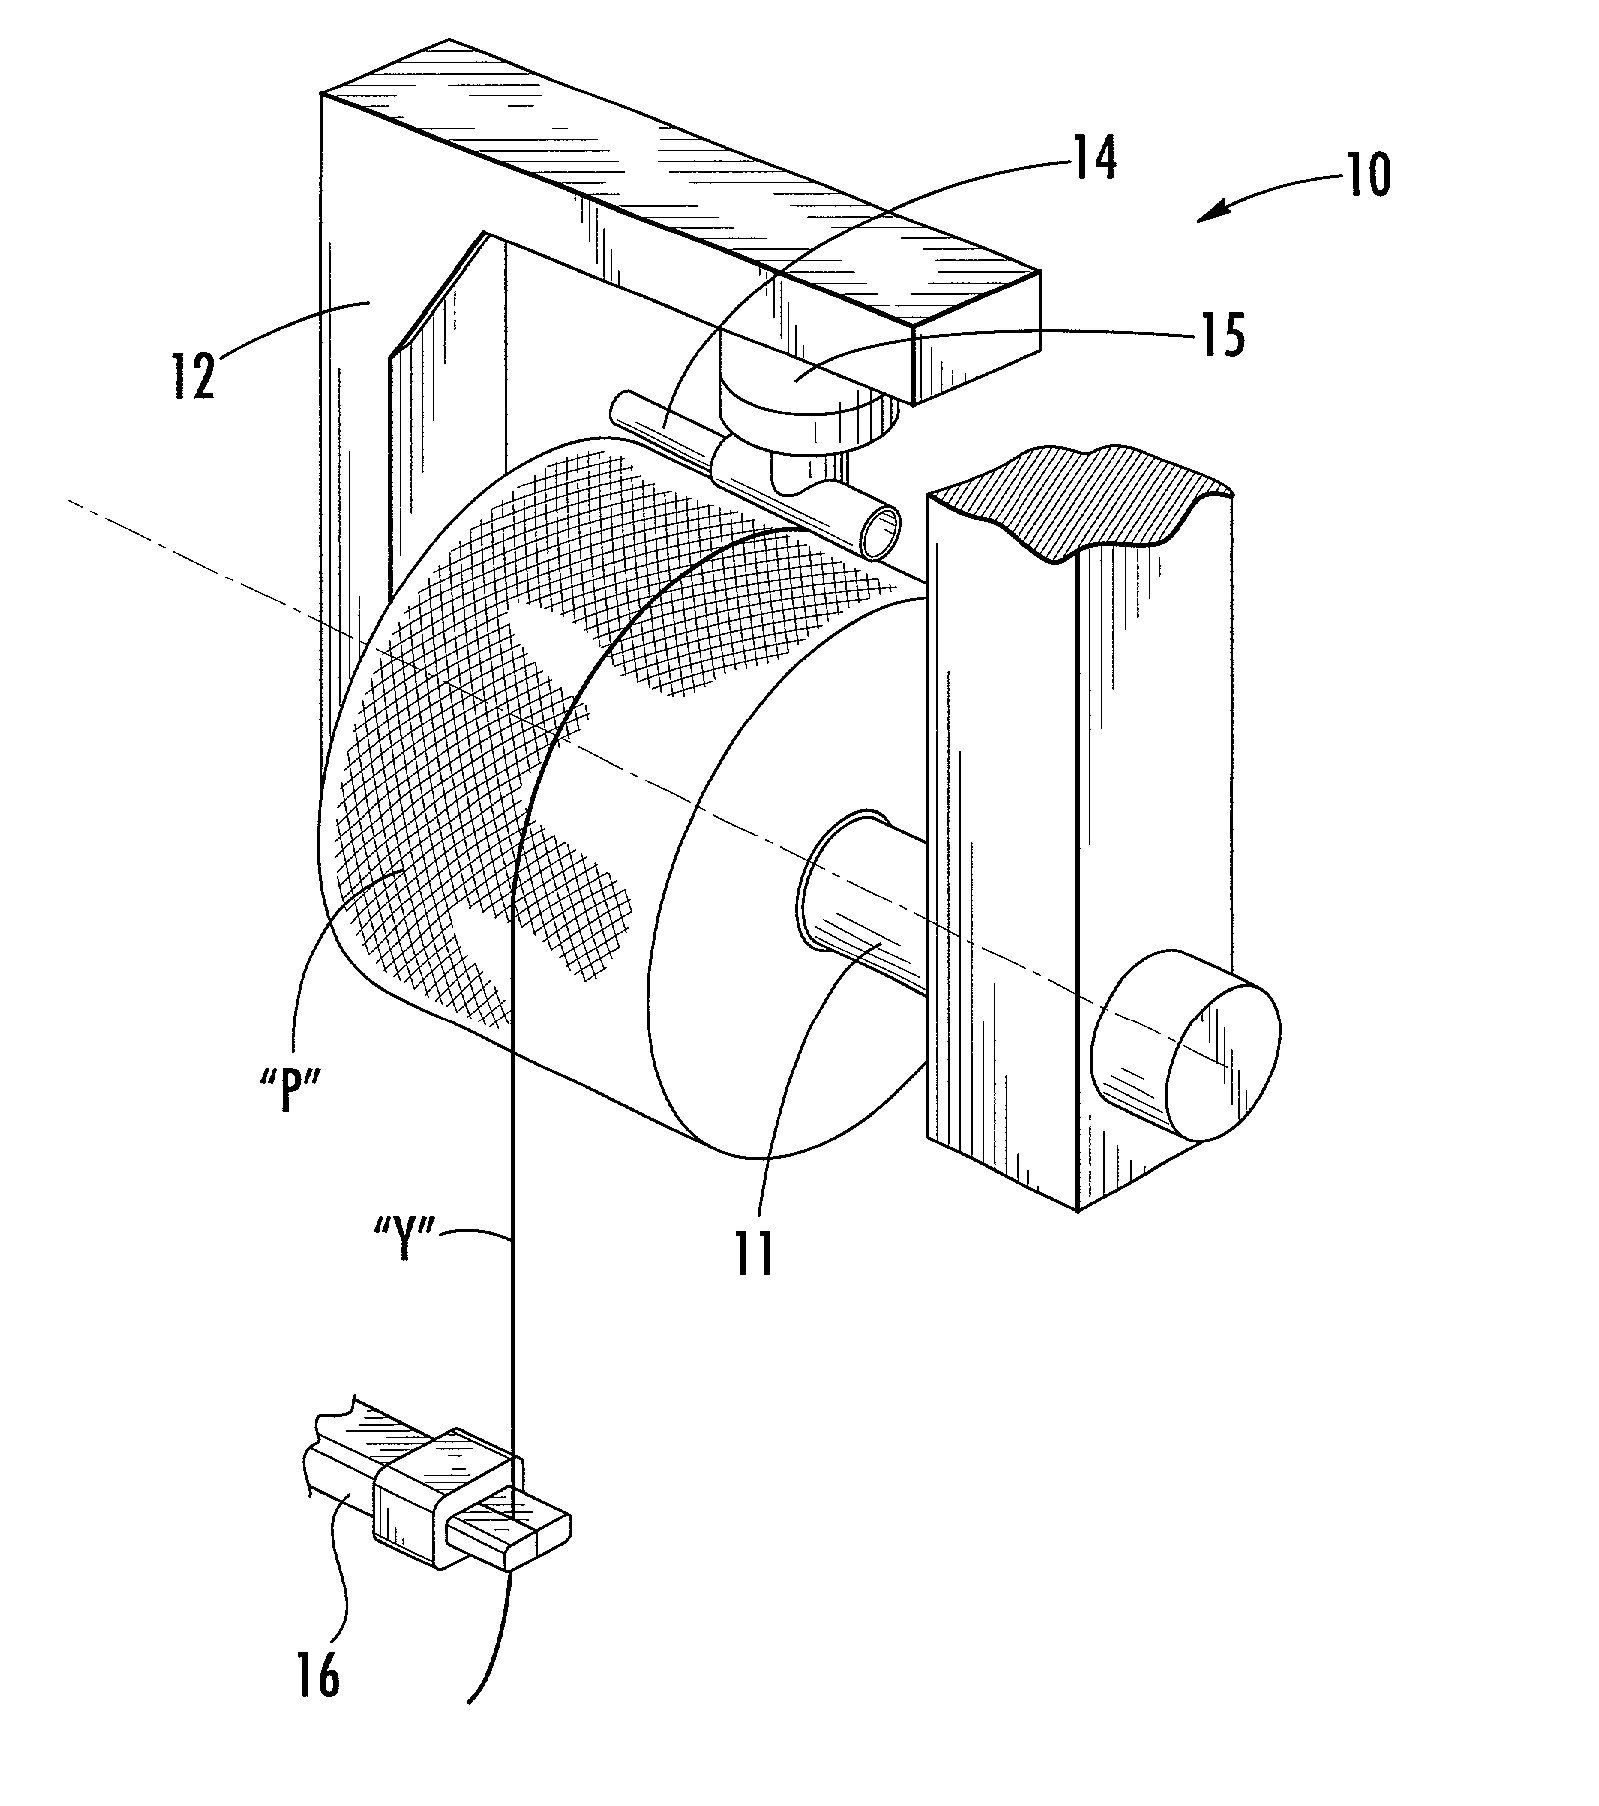 Automatic knot-tying machine